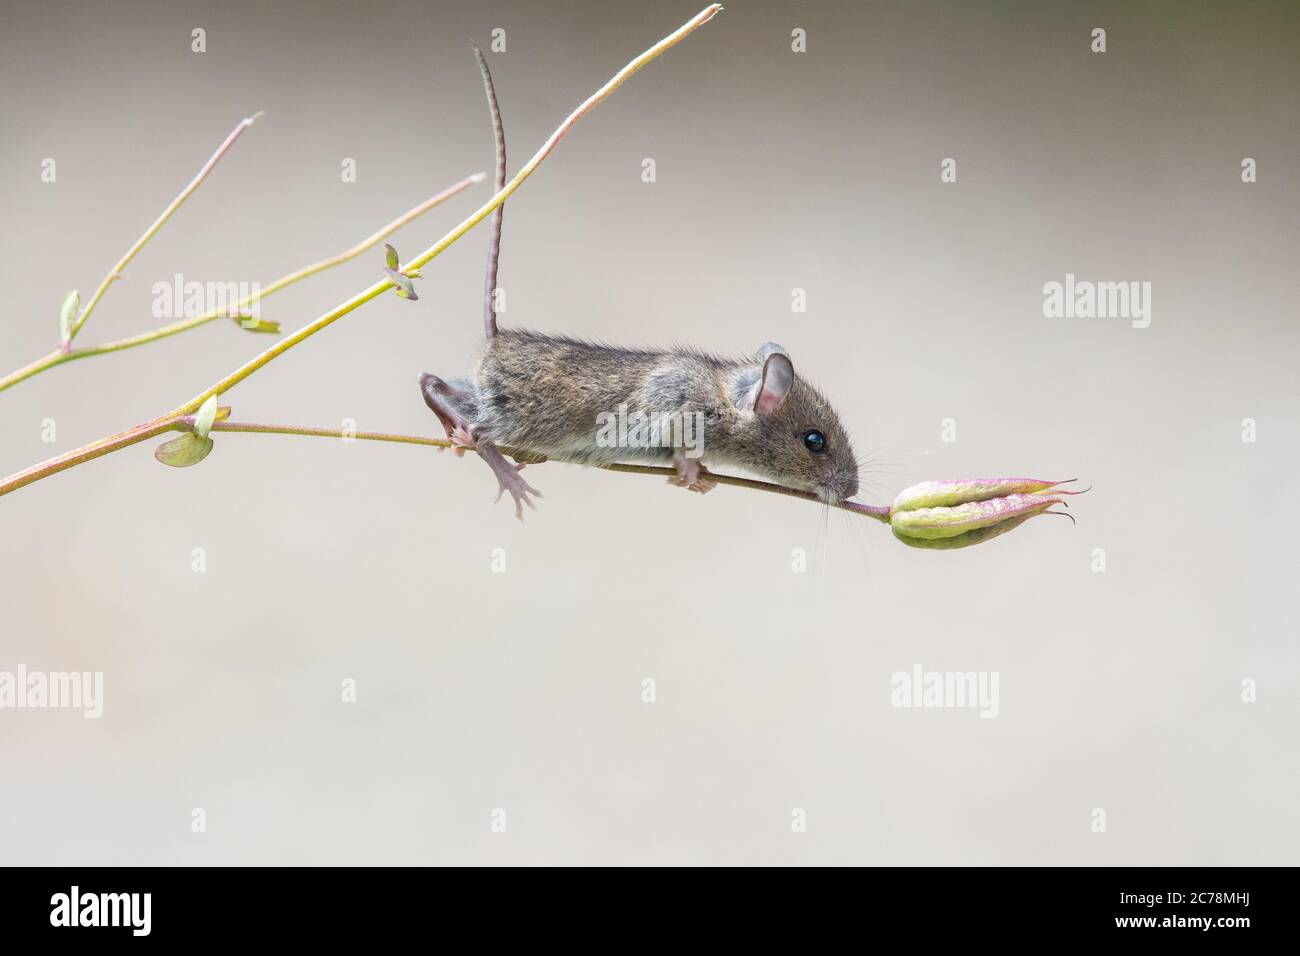 Souris de champ également connue sous le nom de souris de bois Apodemus sylvaticus plante d'escalade tiges dans le jardin britannique collectant des têtes de semis de fleurs Aquilegia - Écosse, Royaume-Uni Banque D'Images